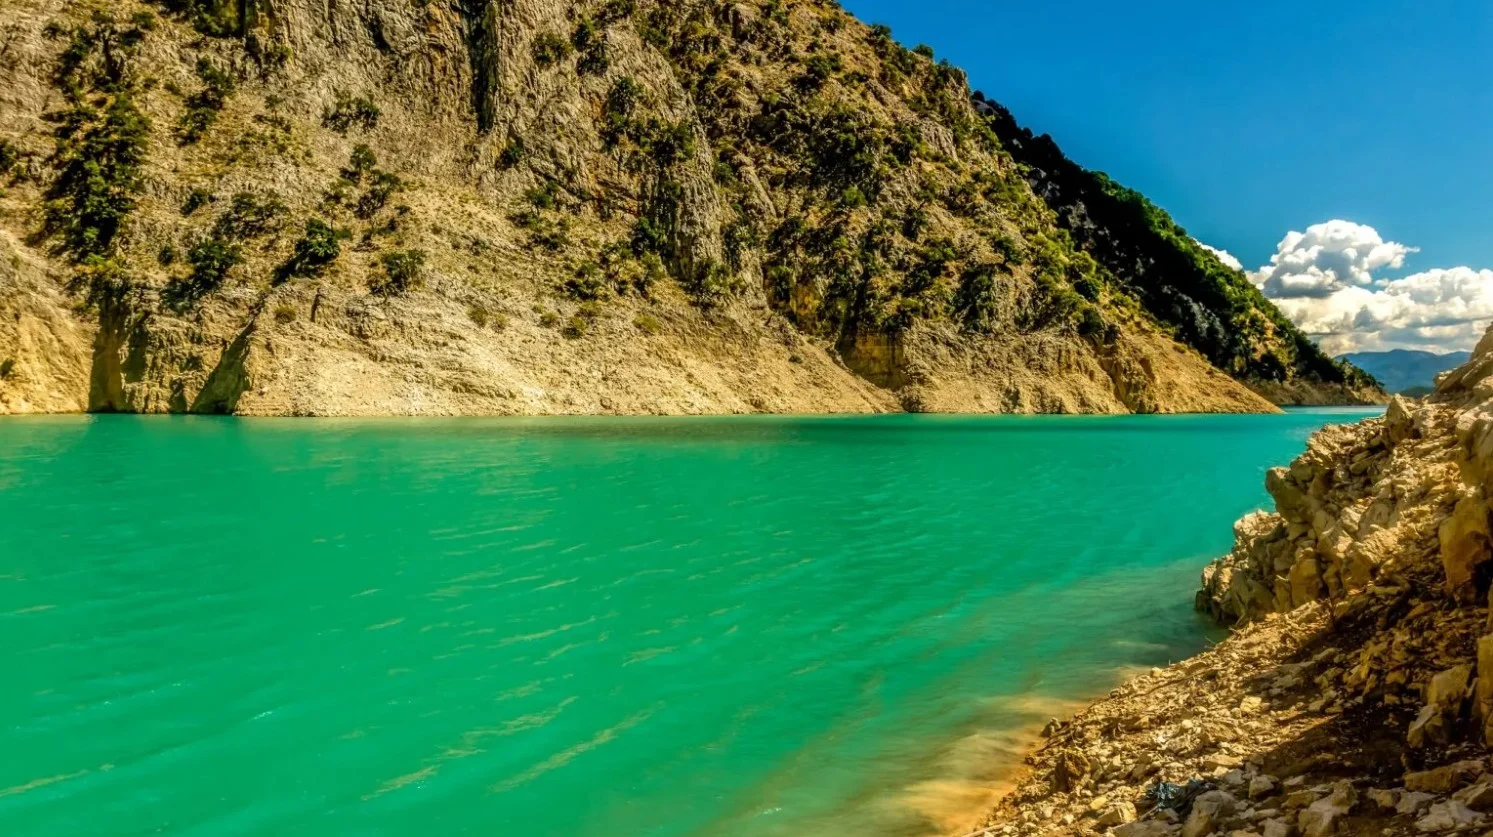 Ο ποταμός Αχελός ξεκινά σε ένα μαγικό σημείο στην κορυφή του όρους Λάκμος και καλύπτει τις περιοχές Τρικάλων, Καρδίτσας, Άρτας, Ευρυτανίας και Ατολοκαρνανίας / Φωτογραφία: Shutterstock.